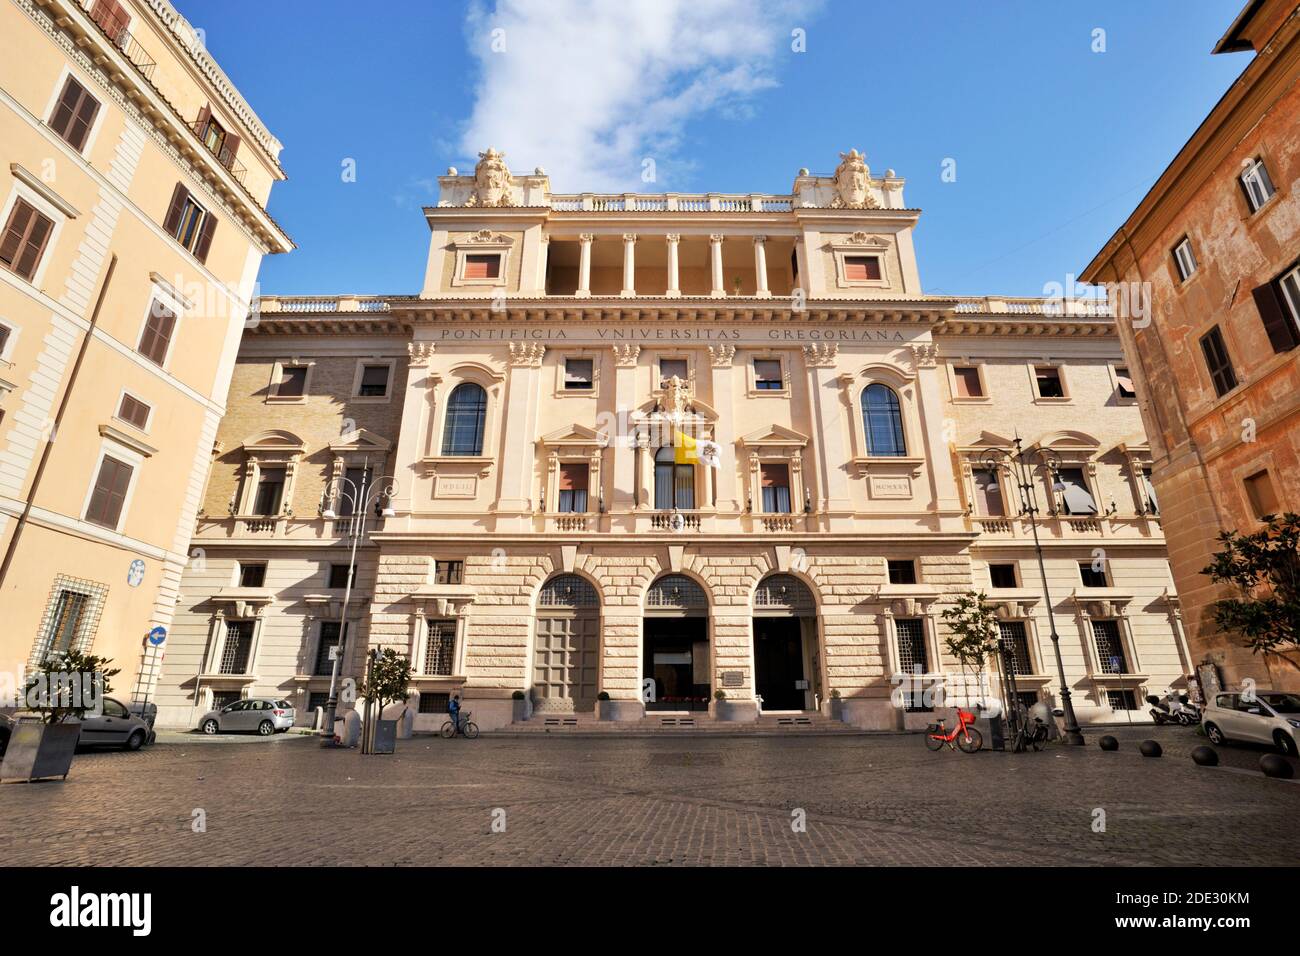 Palazzo der Pontificia Università Gregoriana, Piazza della Pilotta, Rom, Italien Stockfoto